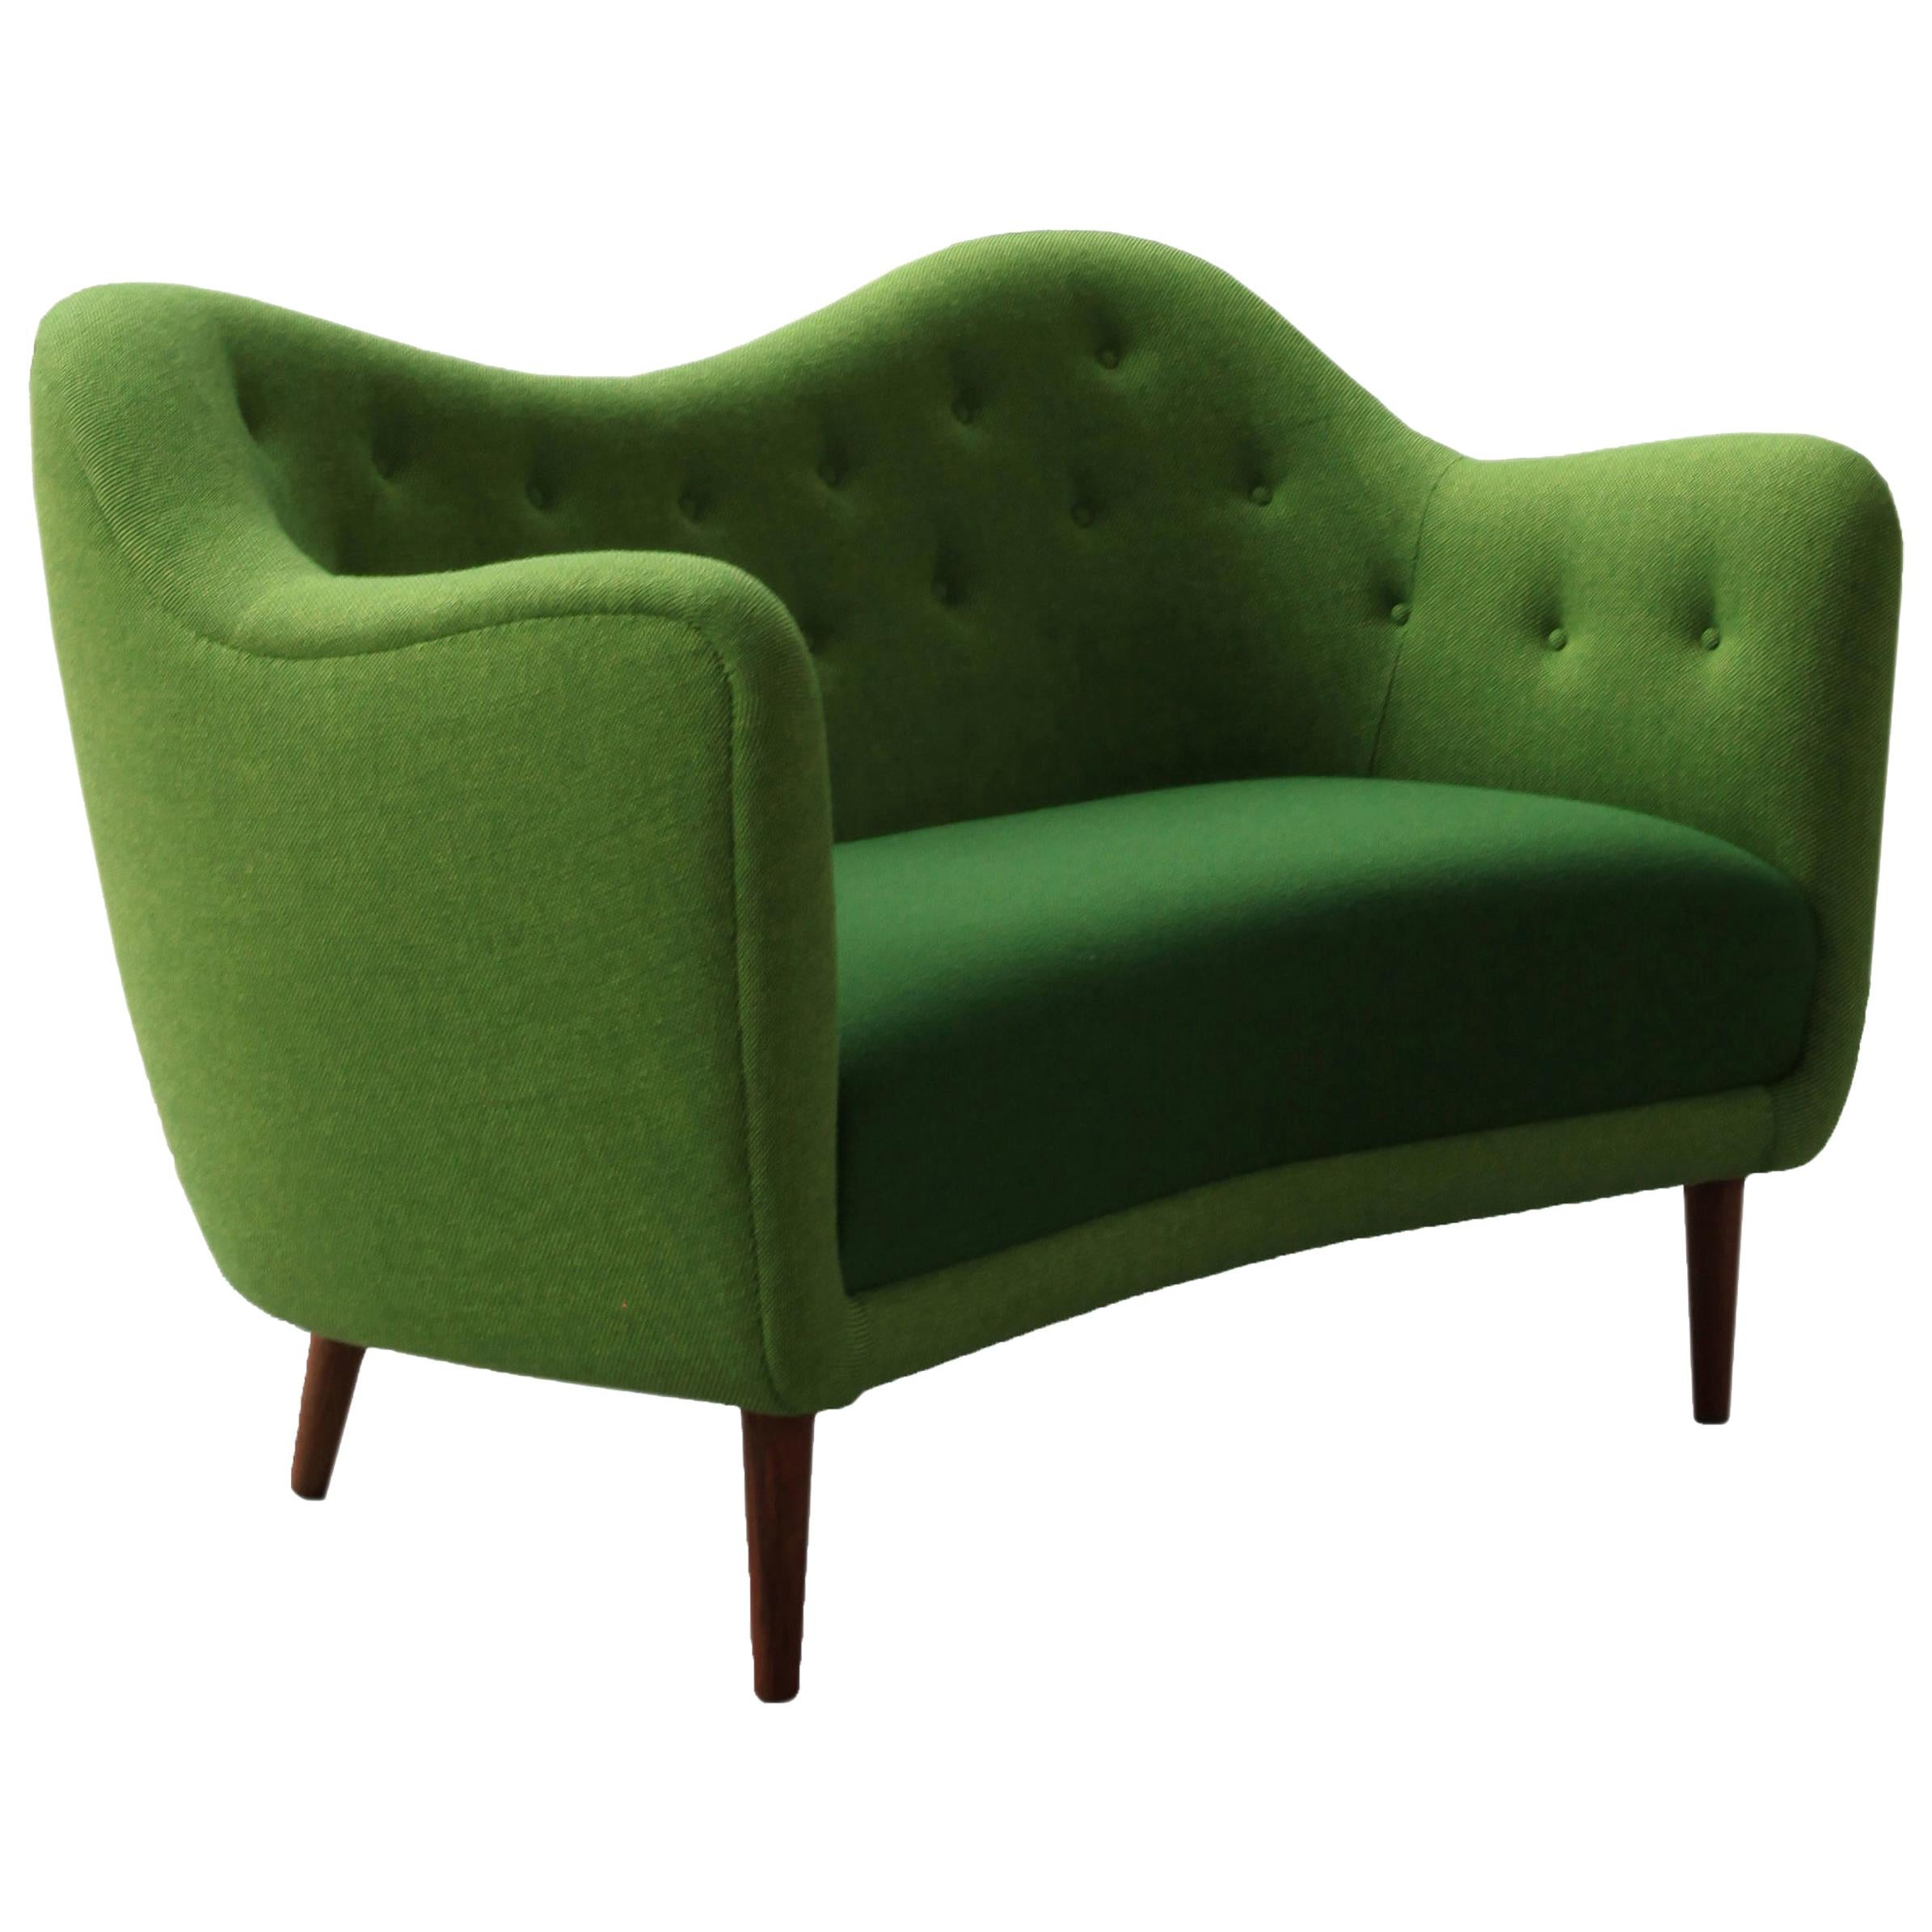 Finn Juhl 46 Sofa Couch Green Fabric Cutout